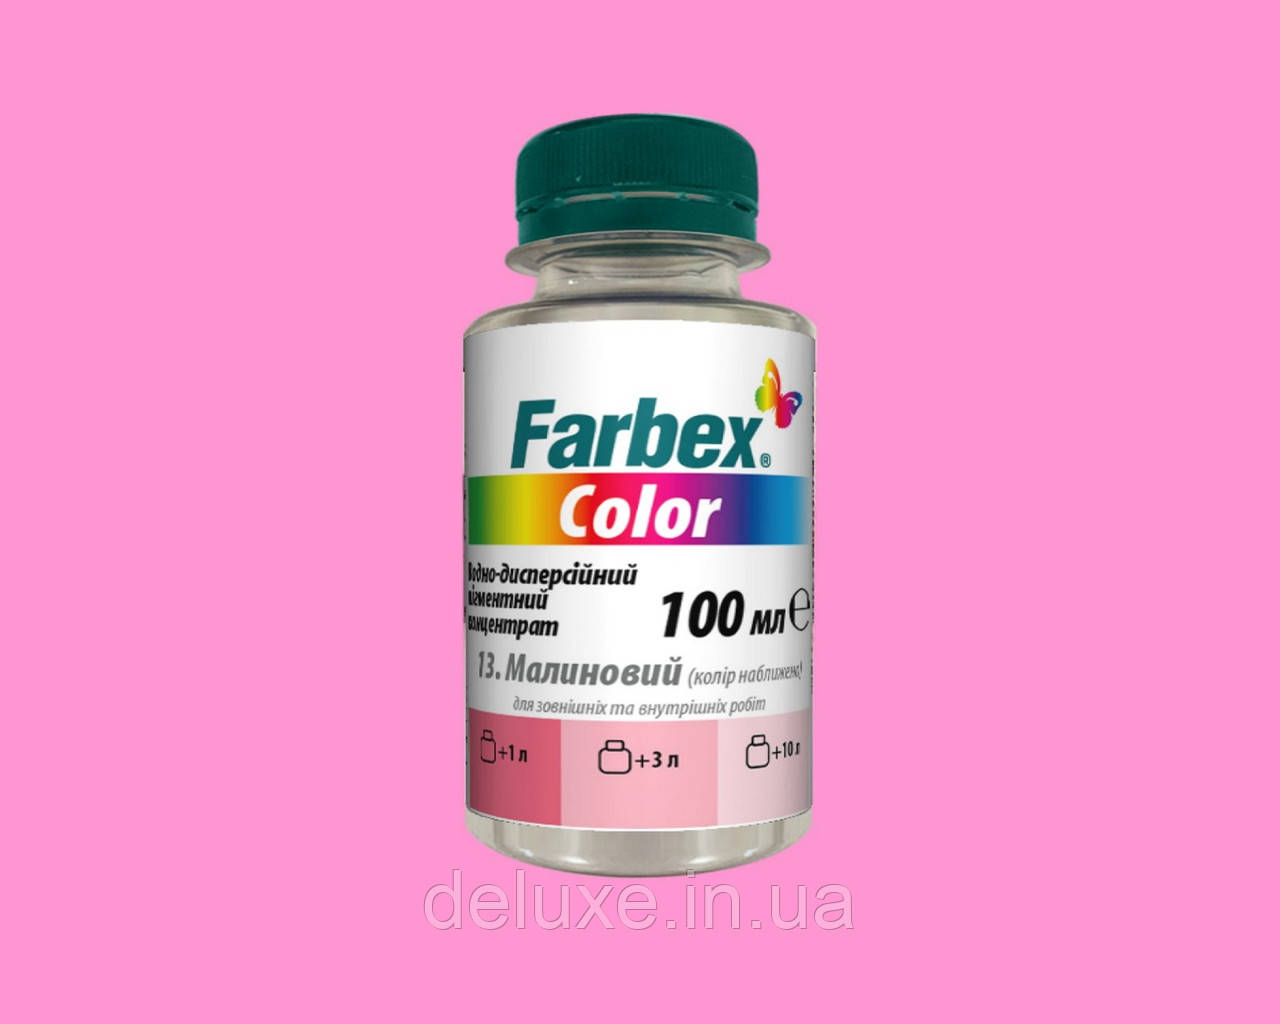 Пігментний концентрат Color для внутрішніх та наружних робіт, рожевий, 100мл, ТМ "Farbex"